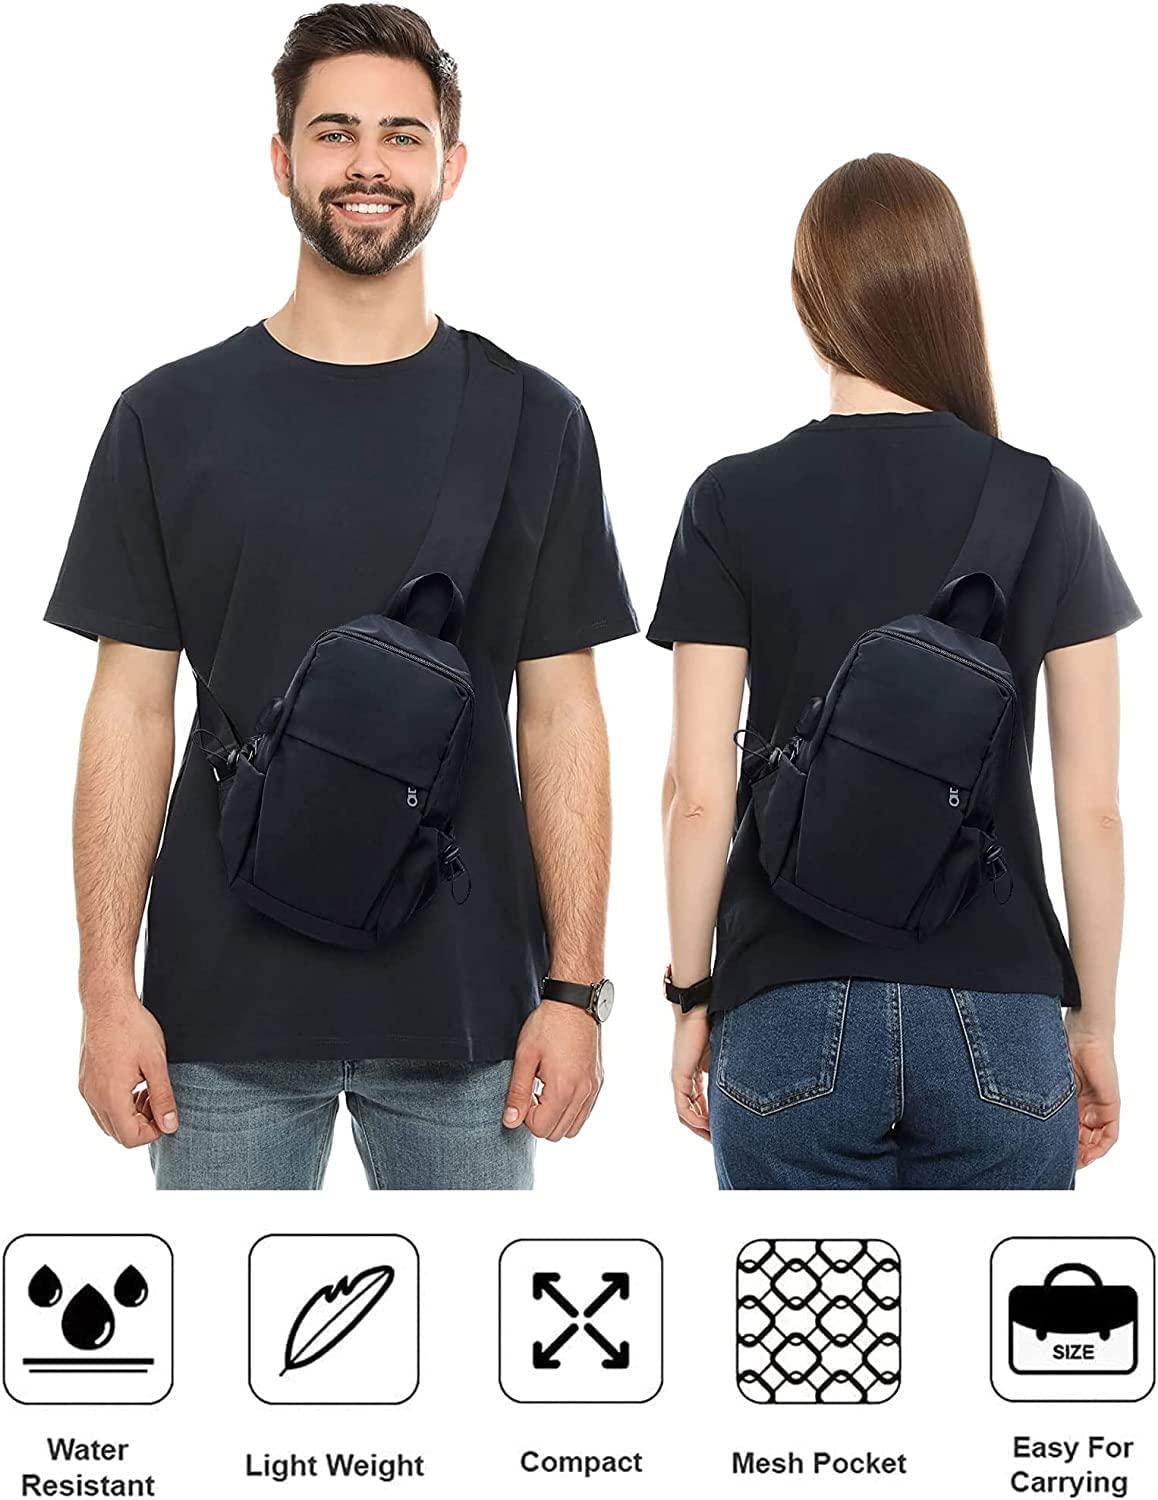 Men's Leather Backpack Sling Bag Crossbody Purse Handbags Chest  Shoulder Travel